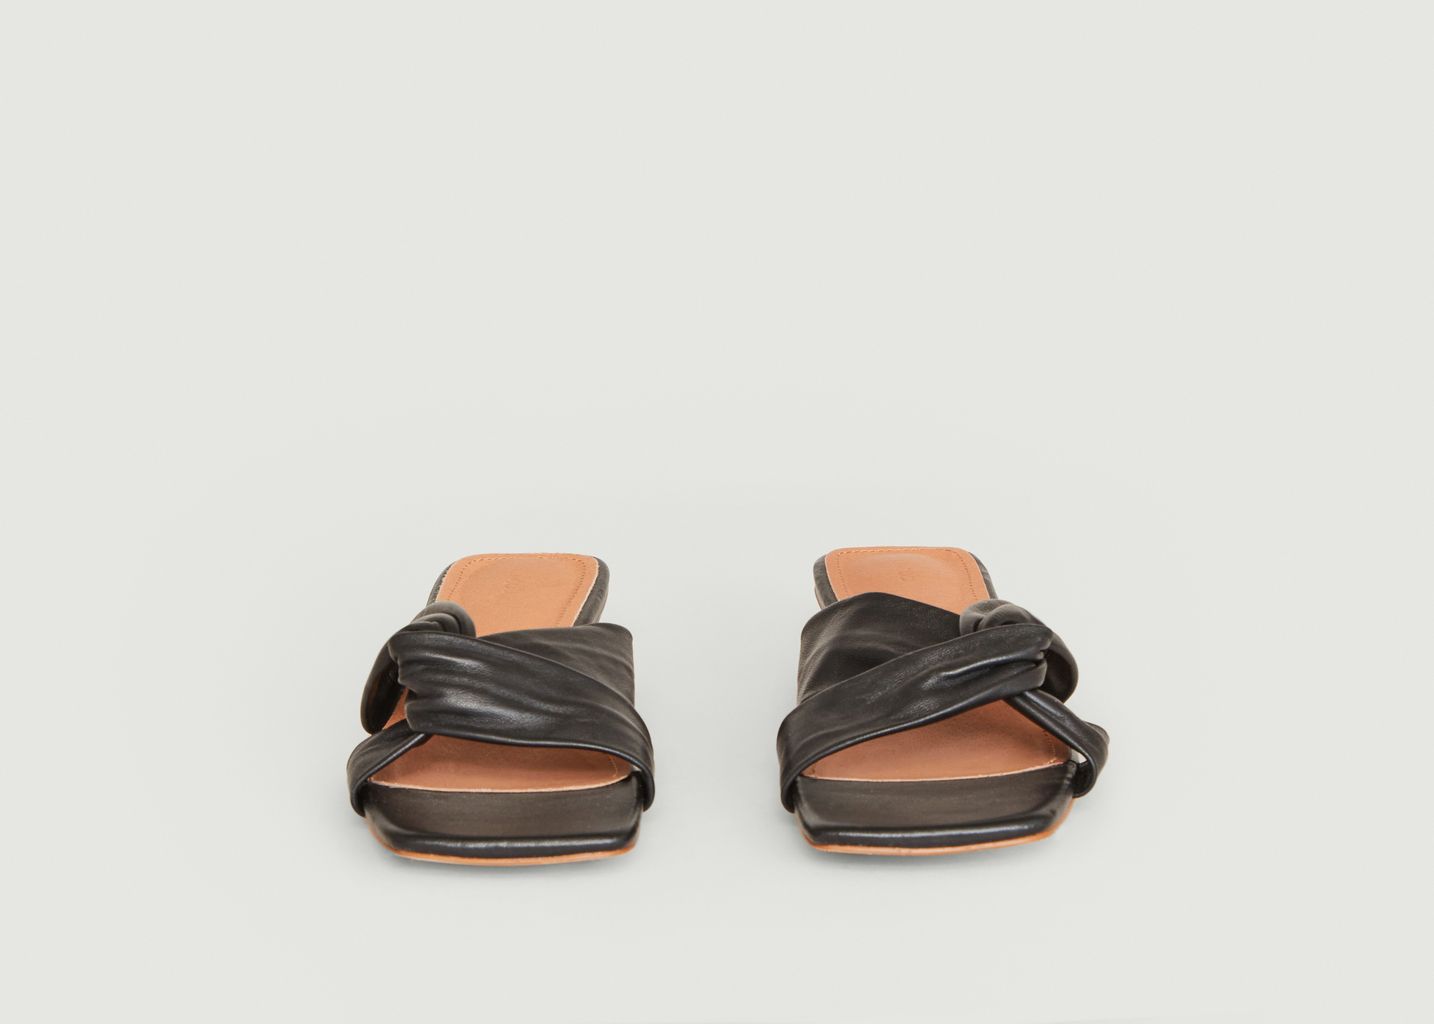 Huma leather sandals - Suncoo